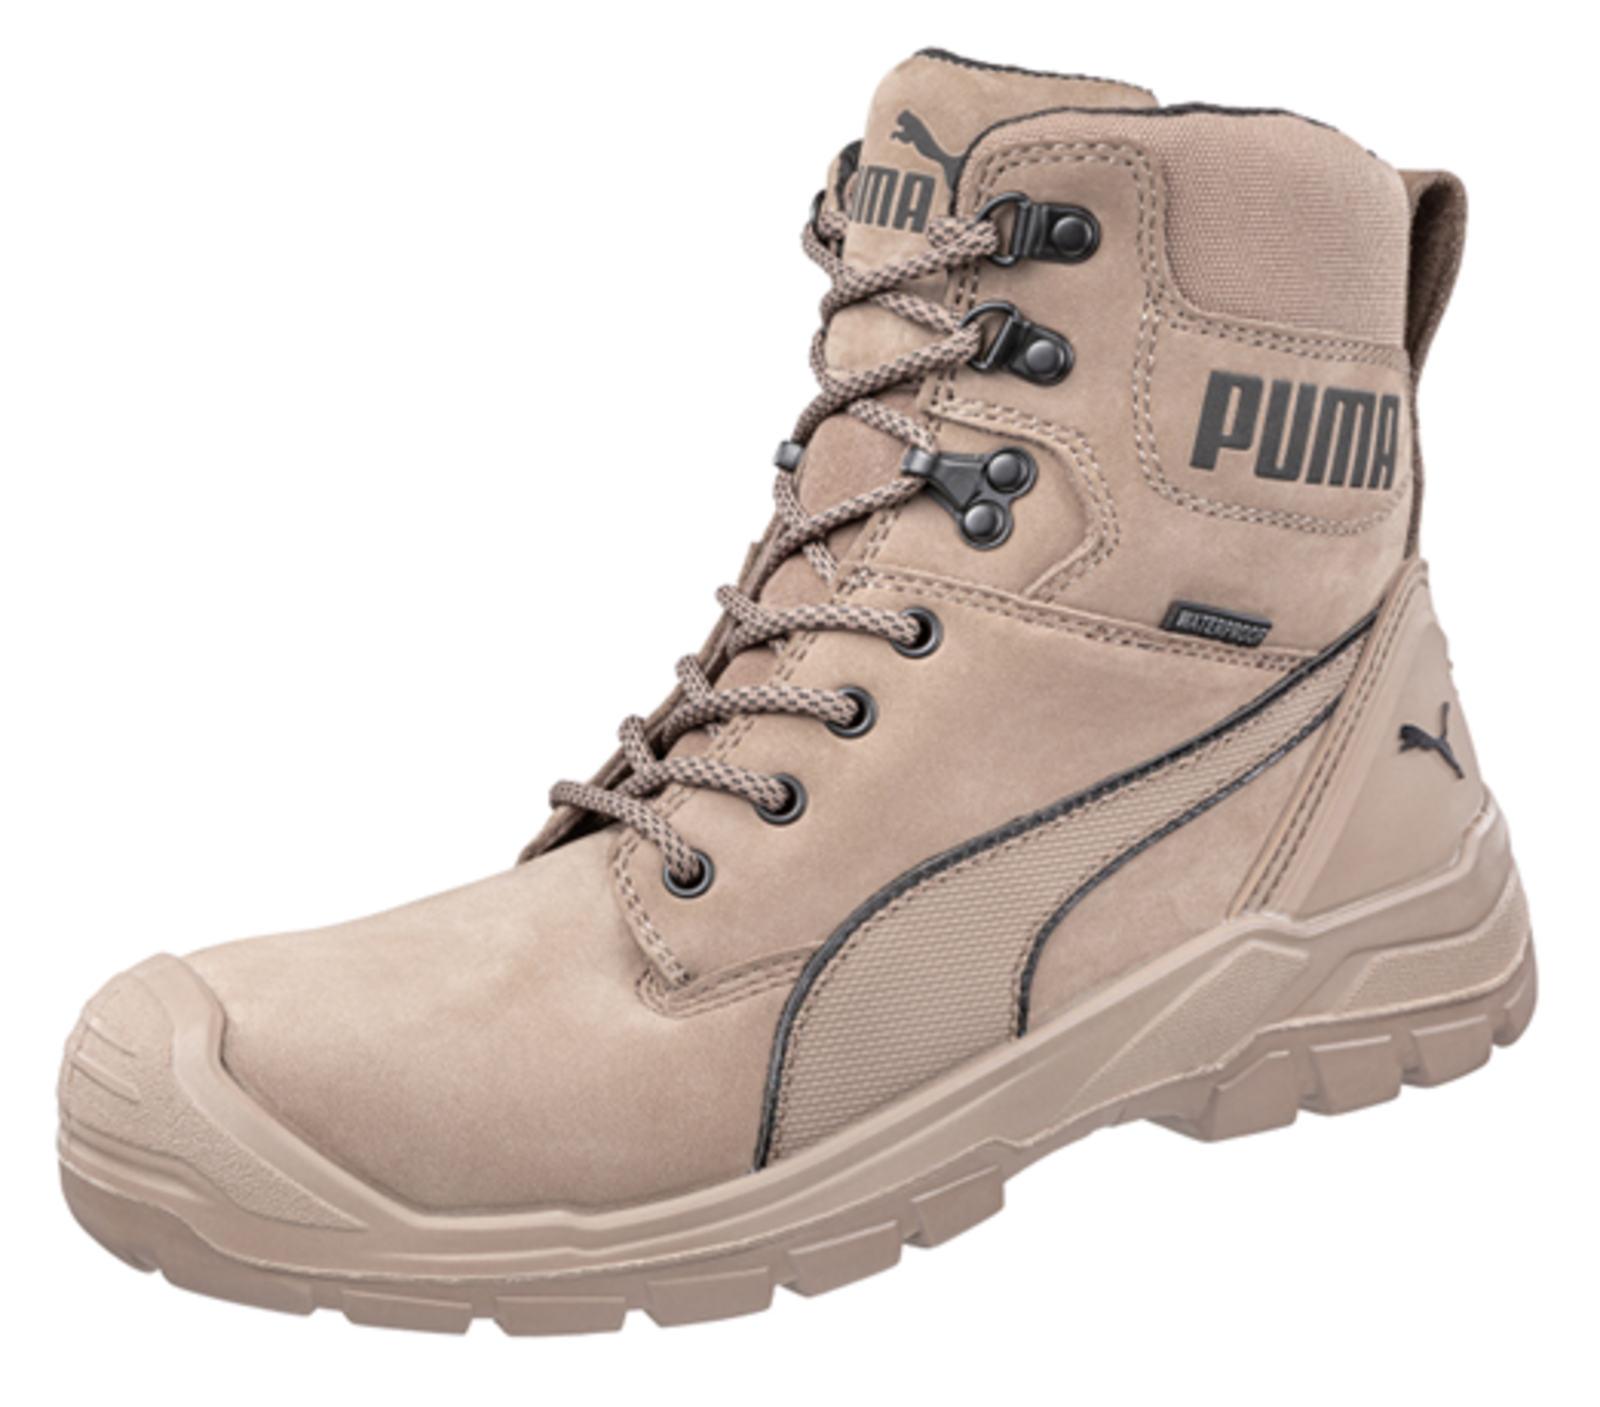 Bezpečnostná obuv Puma Conquest Stone S3 - veľkosť: 45, farba: svetlohnedá